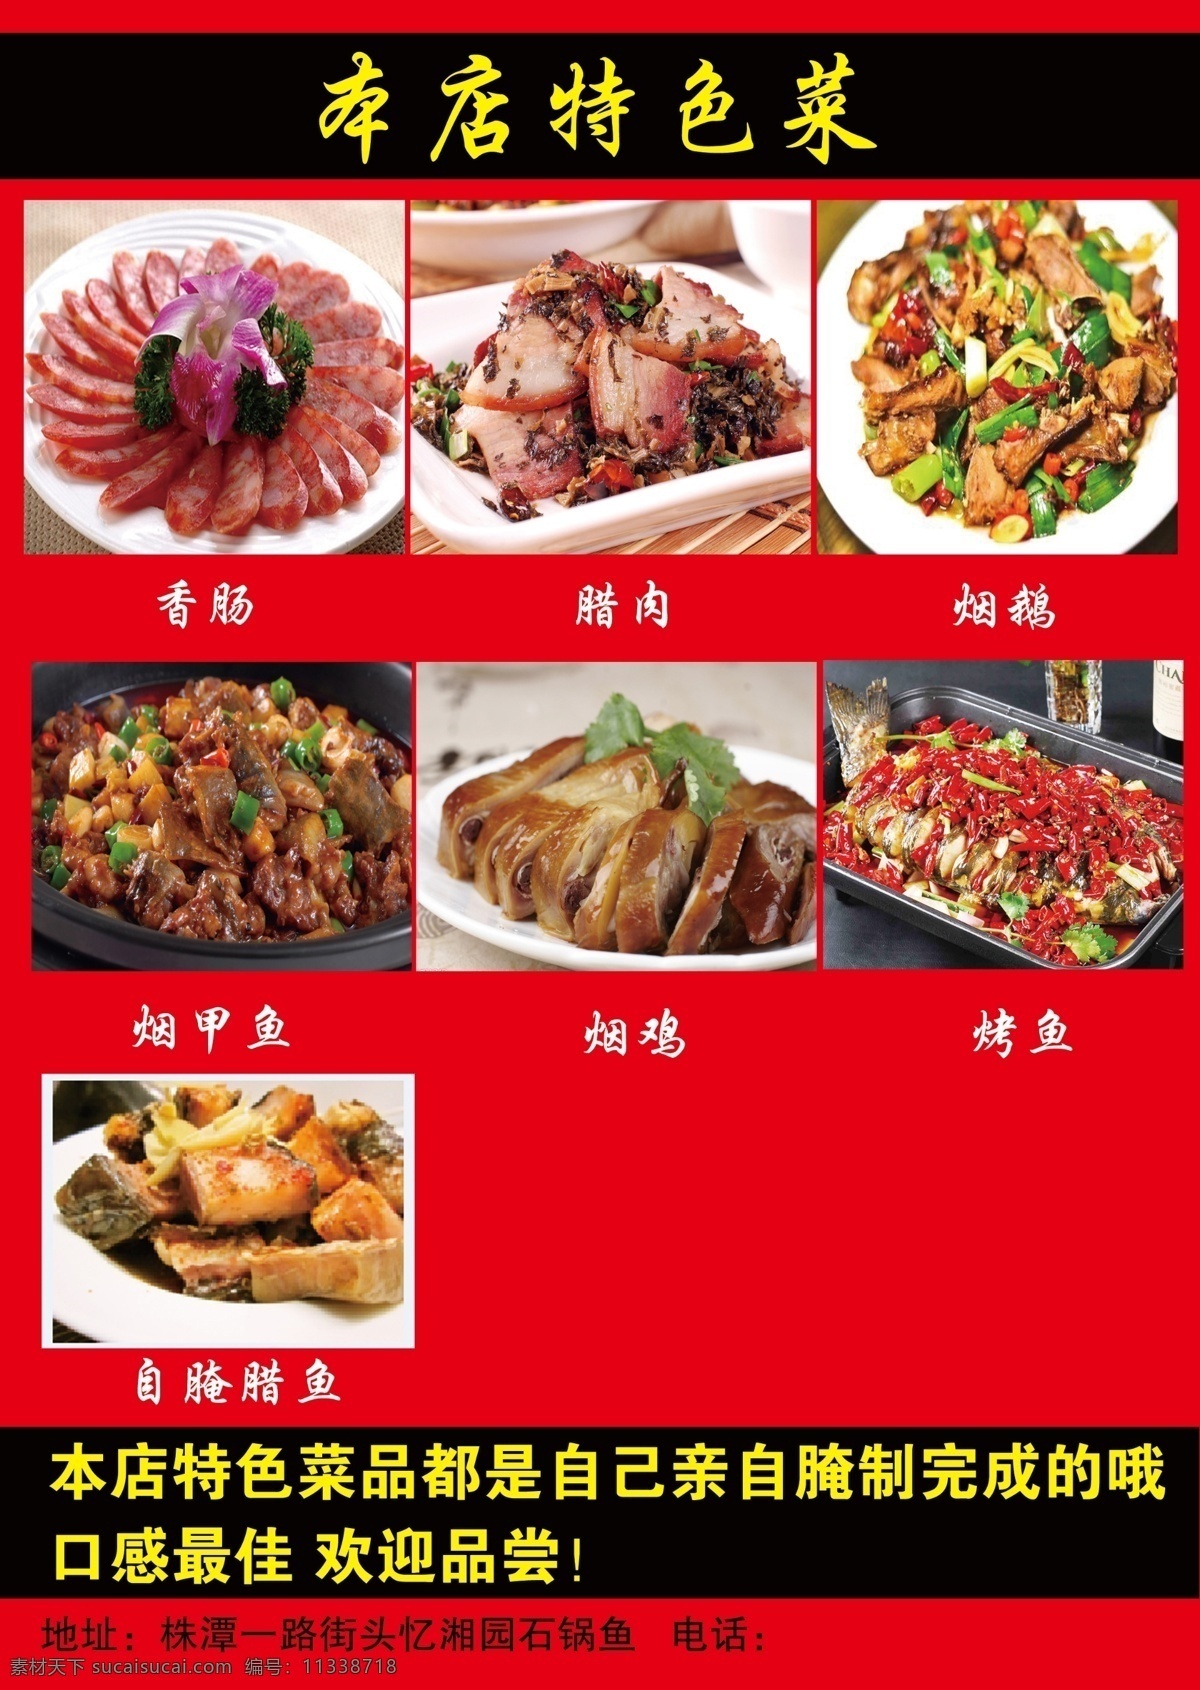 忆 湘 园 饭店 宣传单 特色菜 红色 菜单 平面广告设计 菜单菜谱